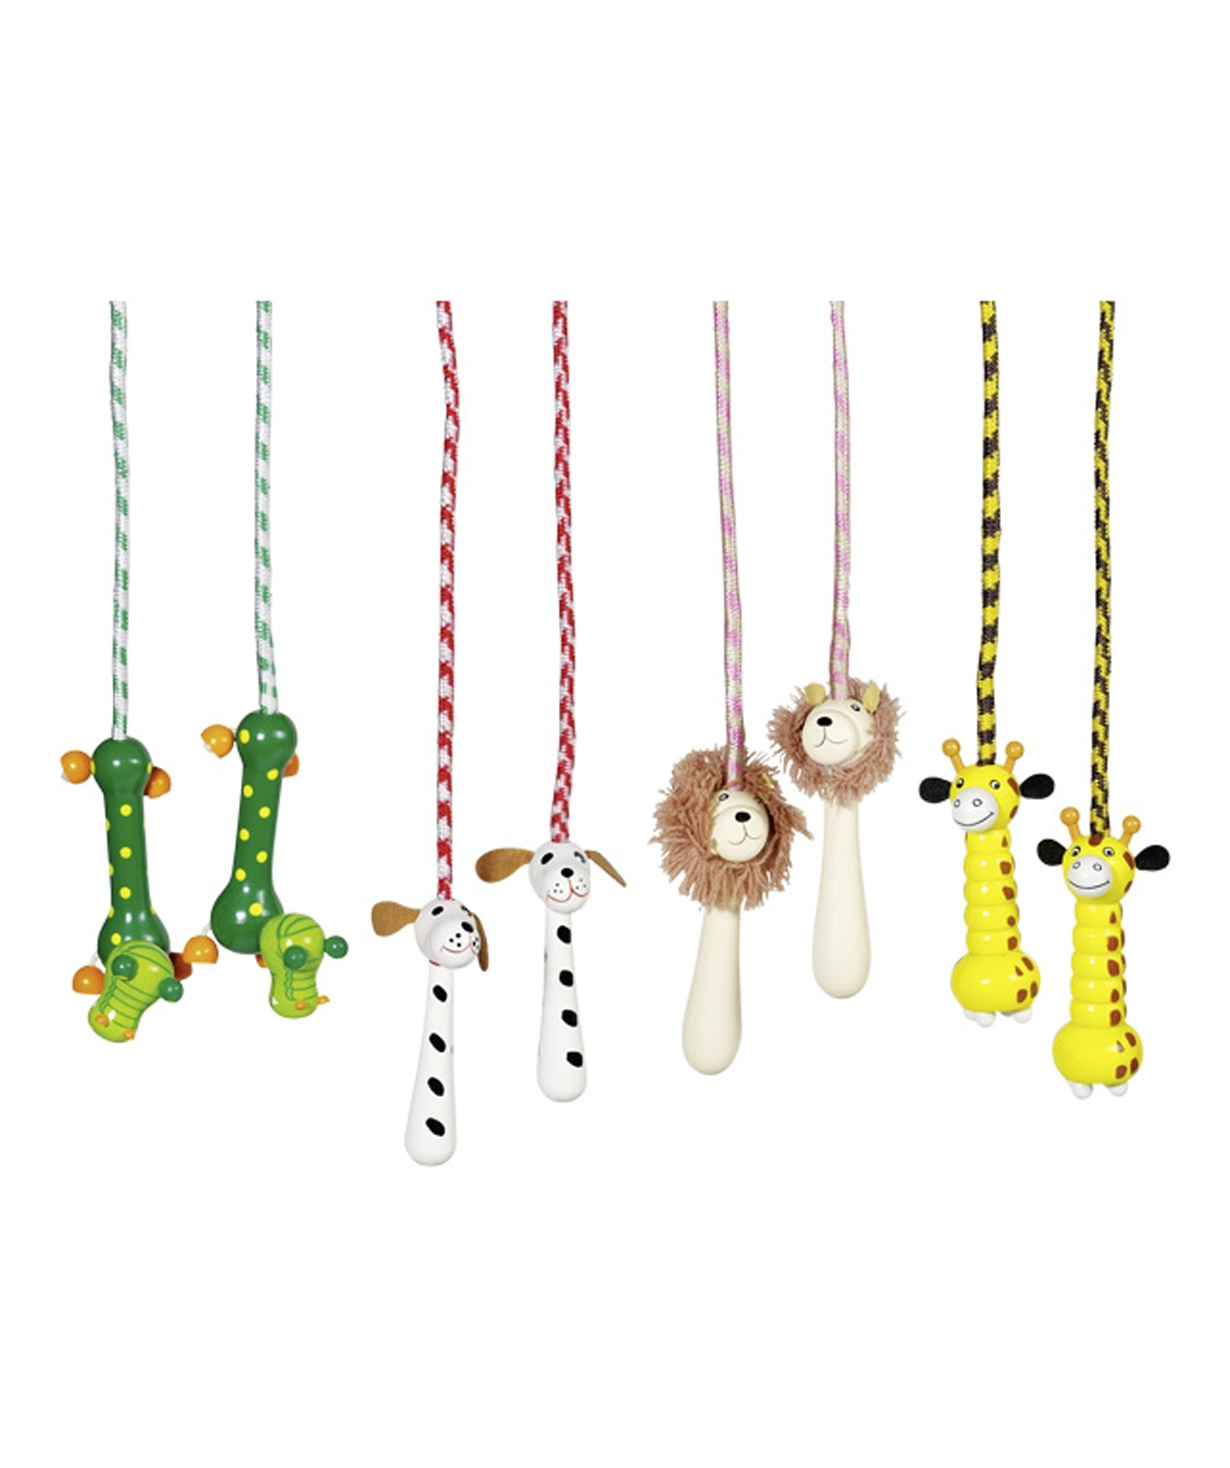 Toy `Goki Toys` Skipping-rope